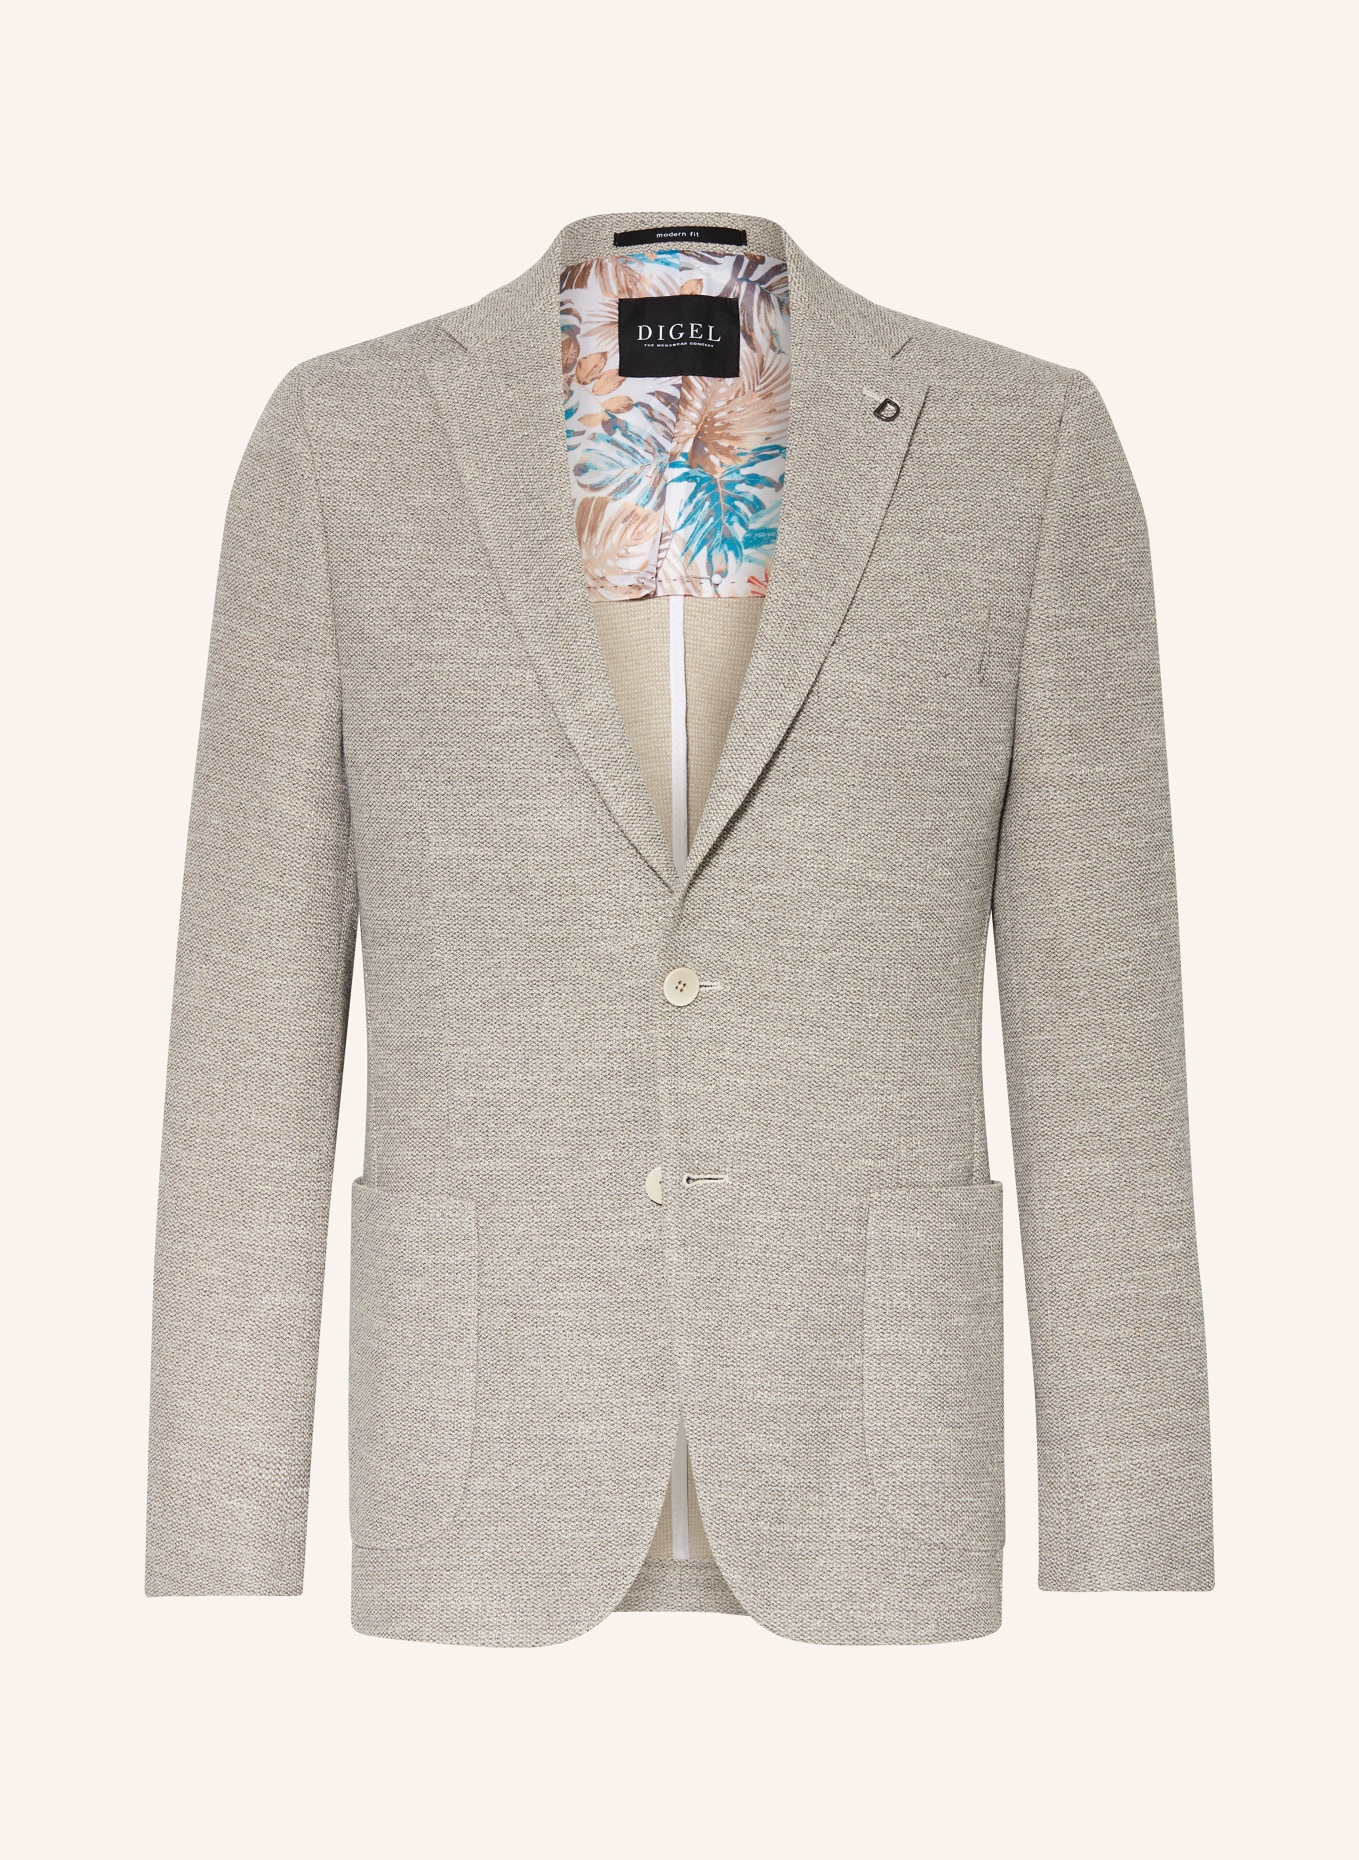 DIGEL Tailored jacket EDWARD Regular Fit, Color: BEIGE (Image 1)